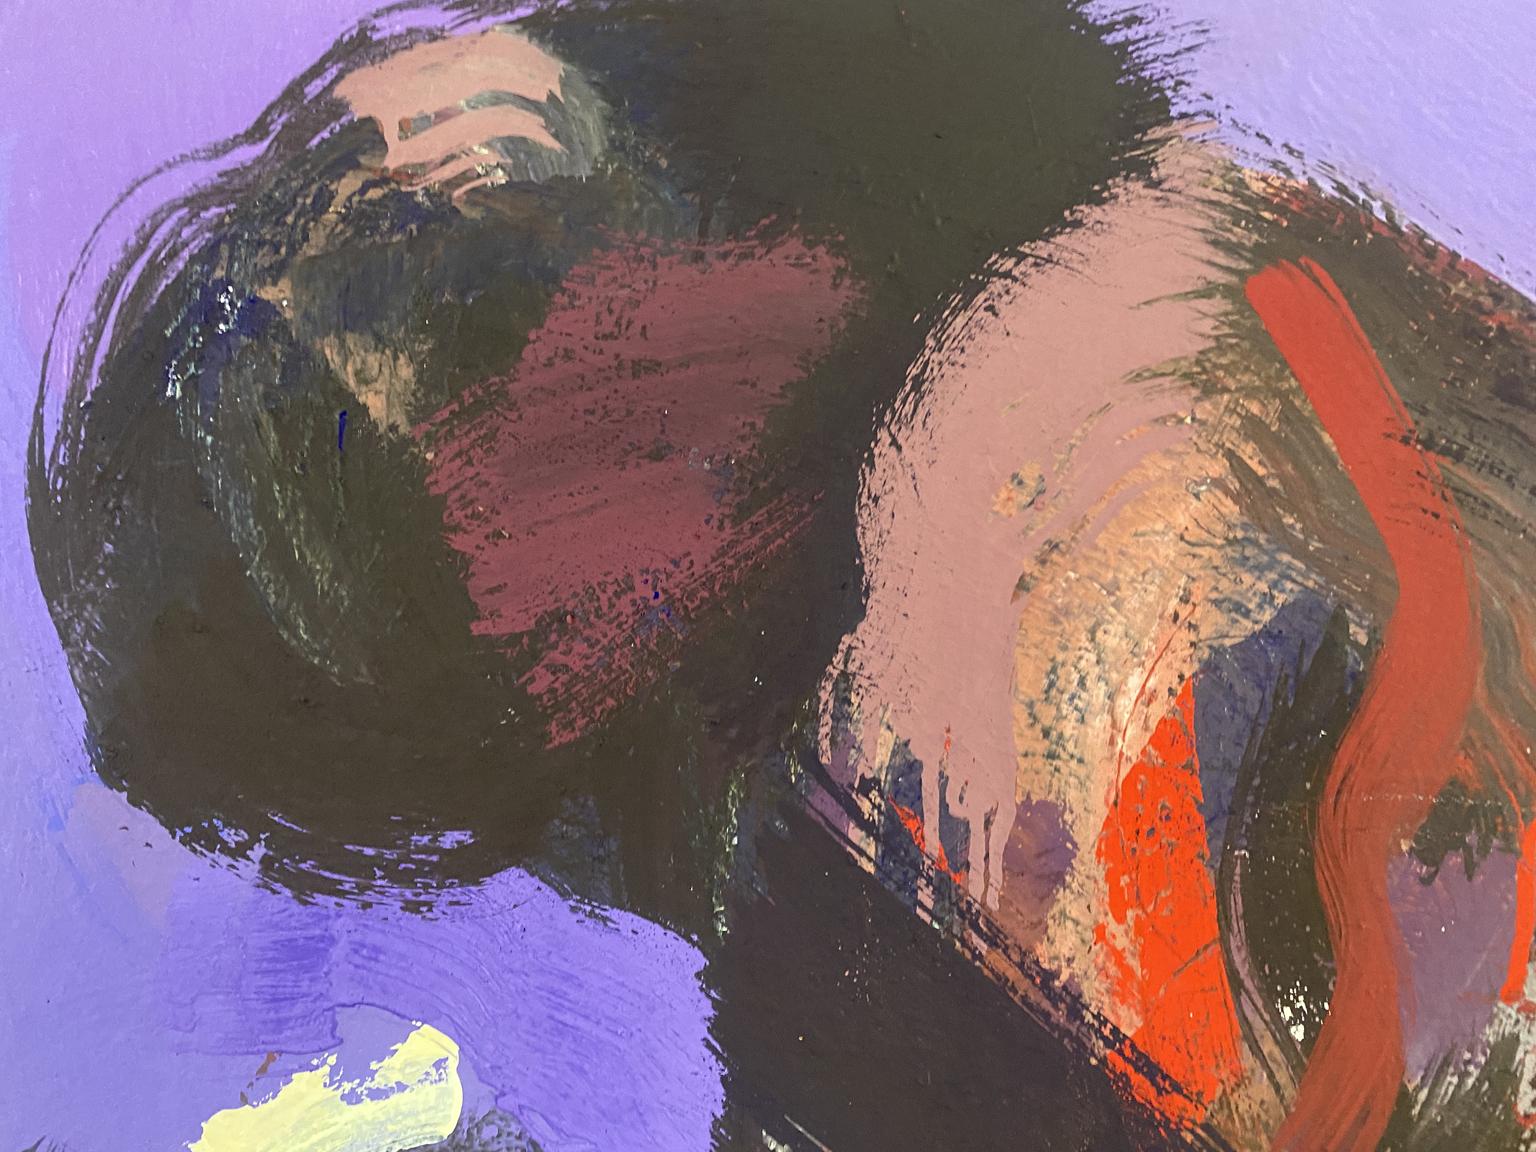 Figure Étude pour Silent Running #5
David Stern (Allemagne, né en 1956)
Acrylique sur toile
35 pouces par 48 pouces
Signé à la main par l'artiste, certificat d'authenticité disponible
Couleurs : Violet, rouge, bleu
Mots clés utilisés pour décrire